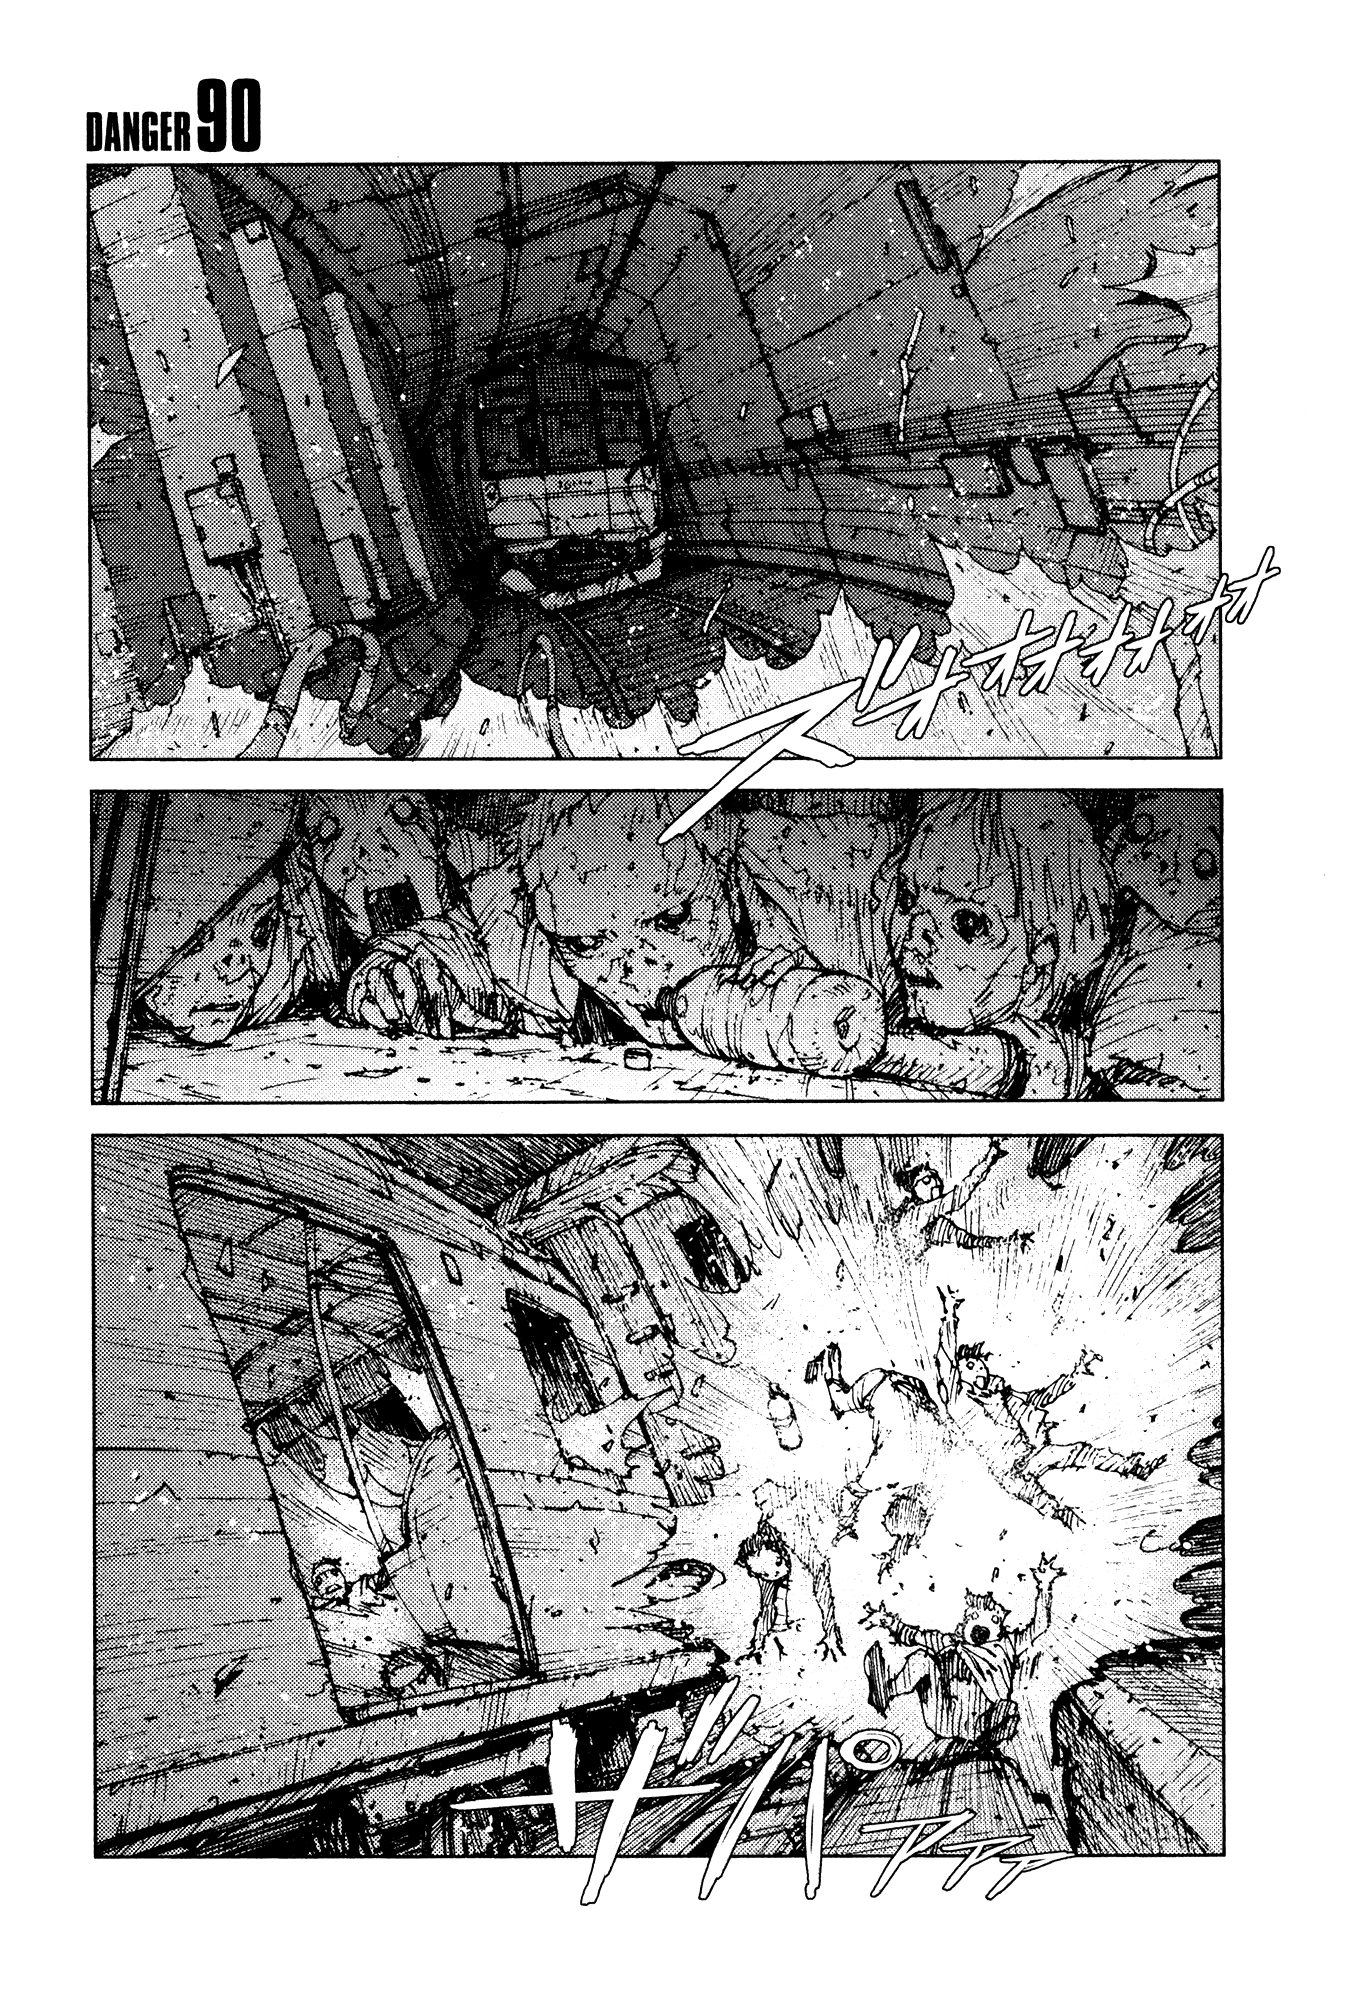 Survival - Shounen S no Kiroku Vol.5 Chapter 90: Danger 90